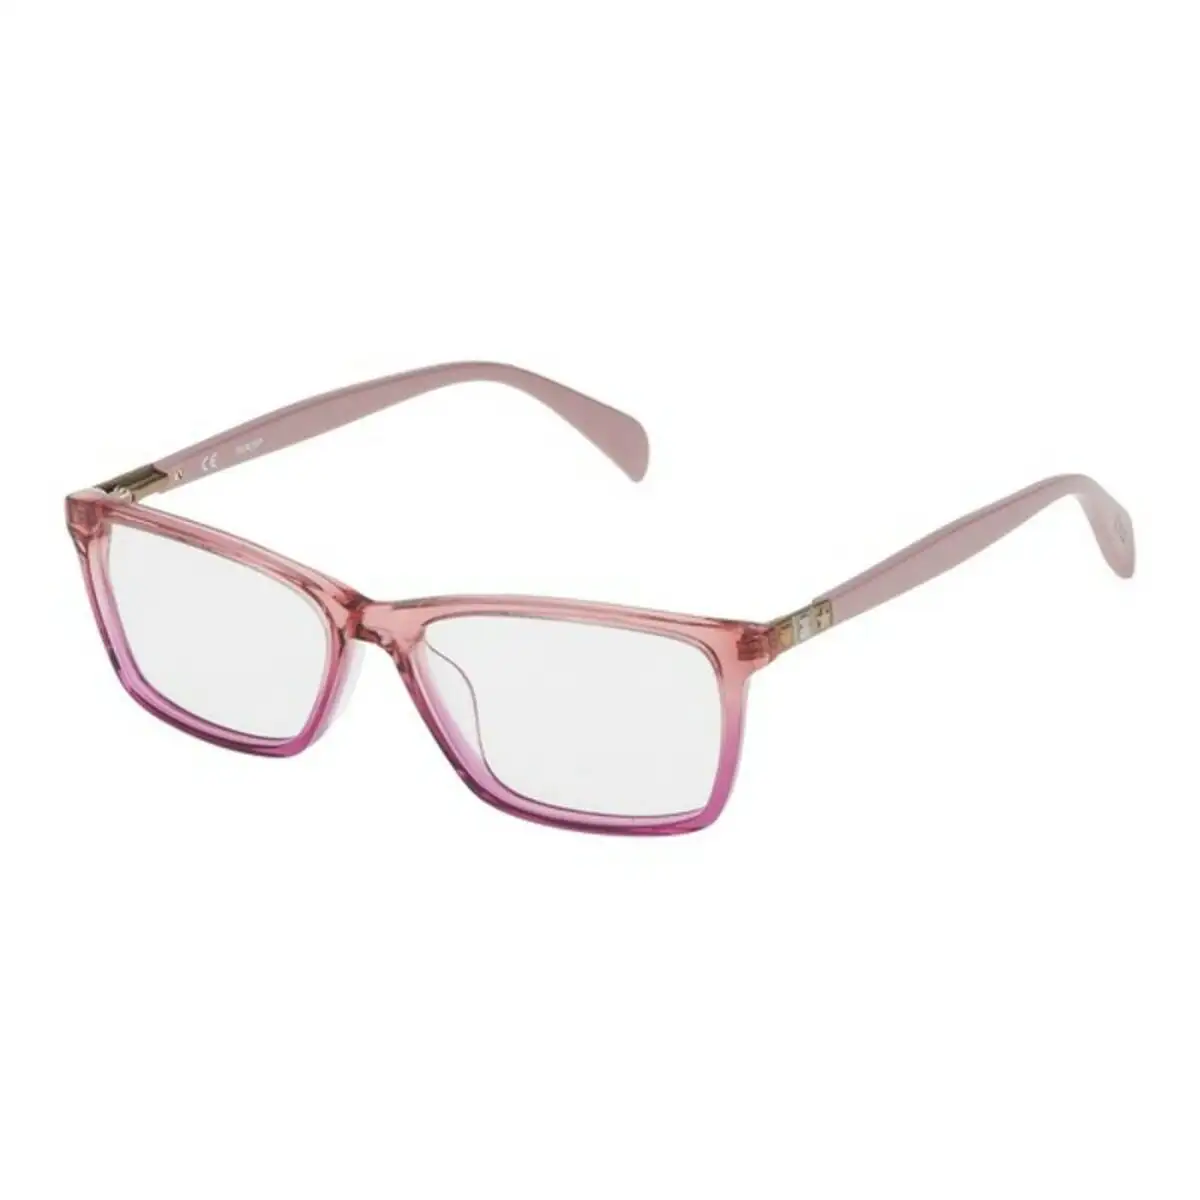 Monture de lunettes femme tous vto937530n92 53 mm rose o 53 mm _6411. Bienvenue sur DIAYTAR SENEGAL - Votre Galerie Shopping Personnalisée. Découvrez un monde de produits diversifiés qui expriment votre style unique et votre passion pour la qualité.